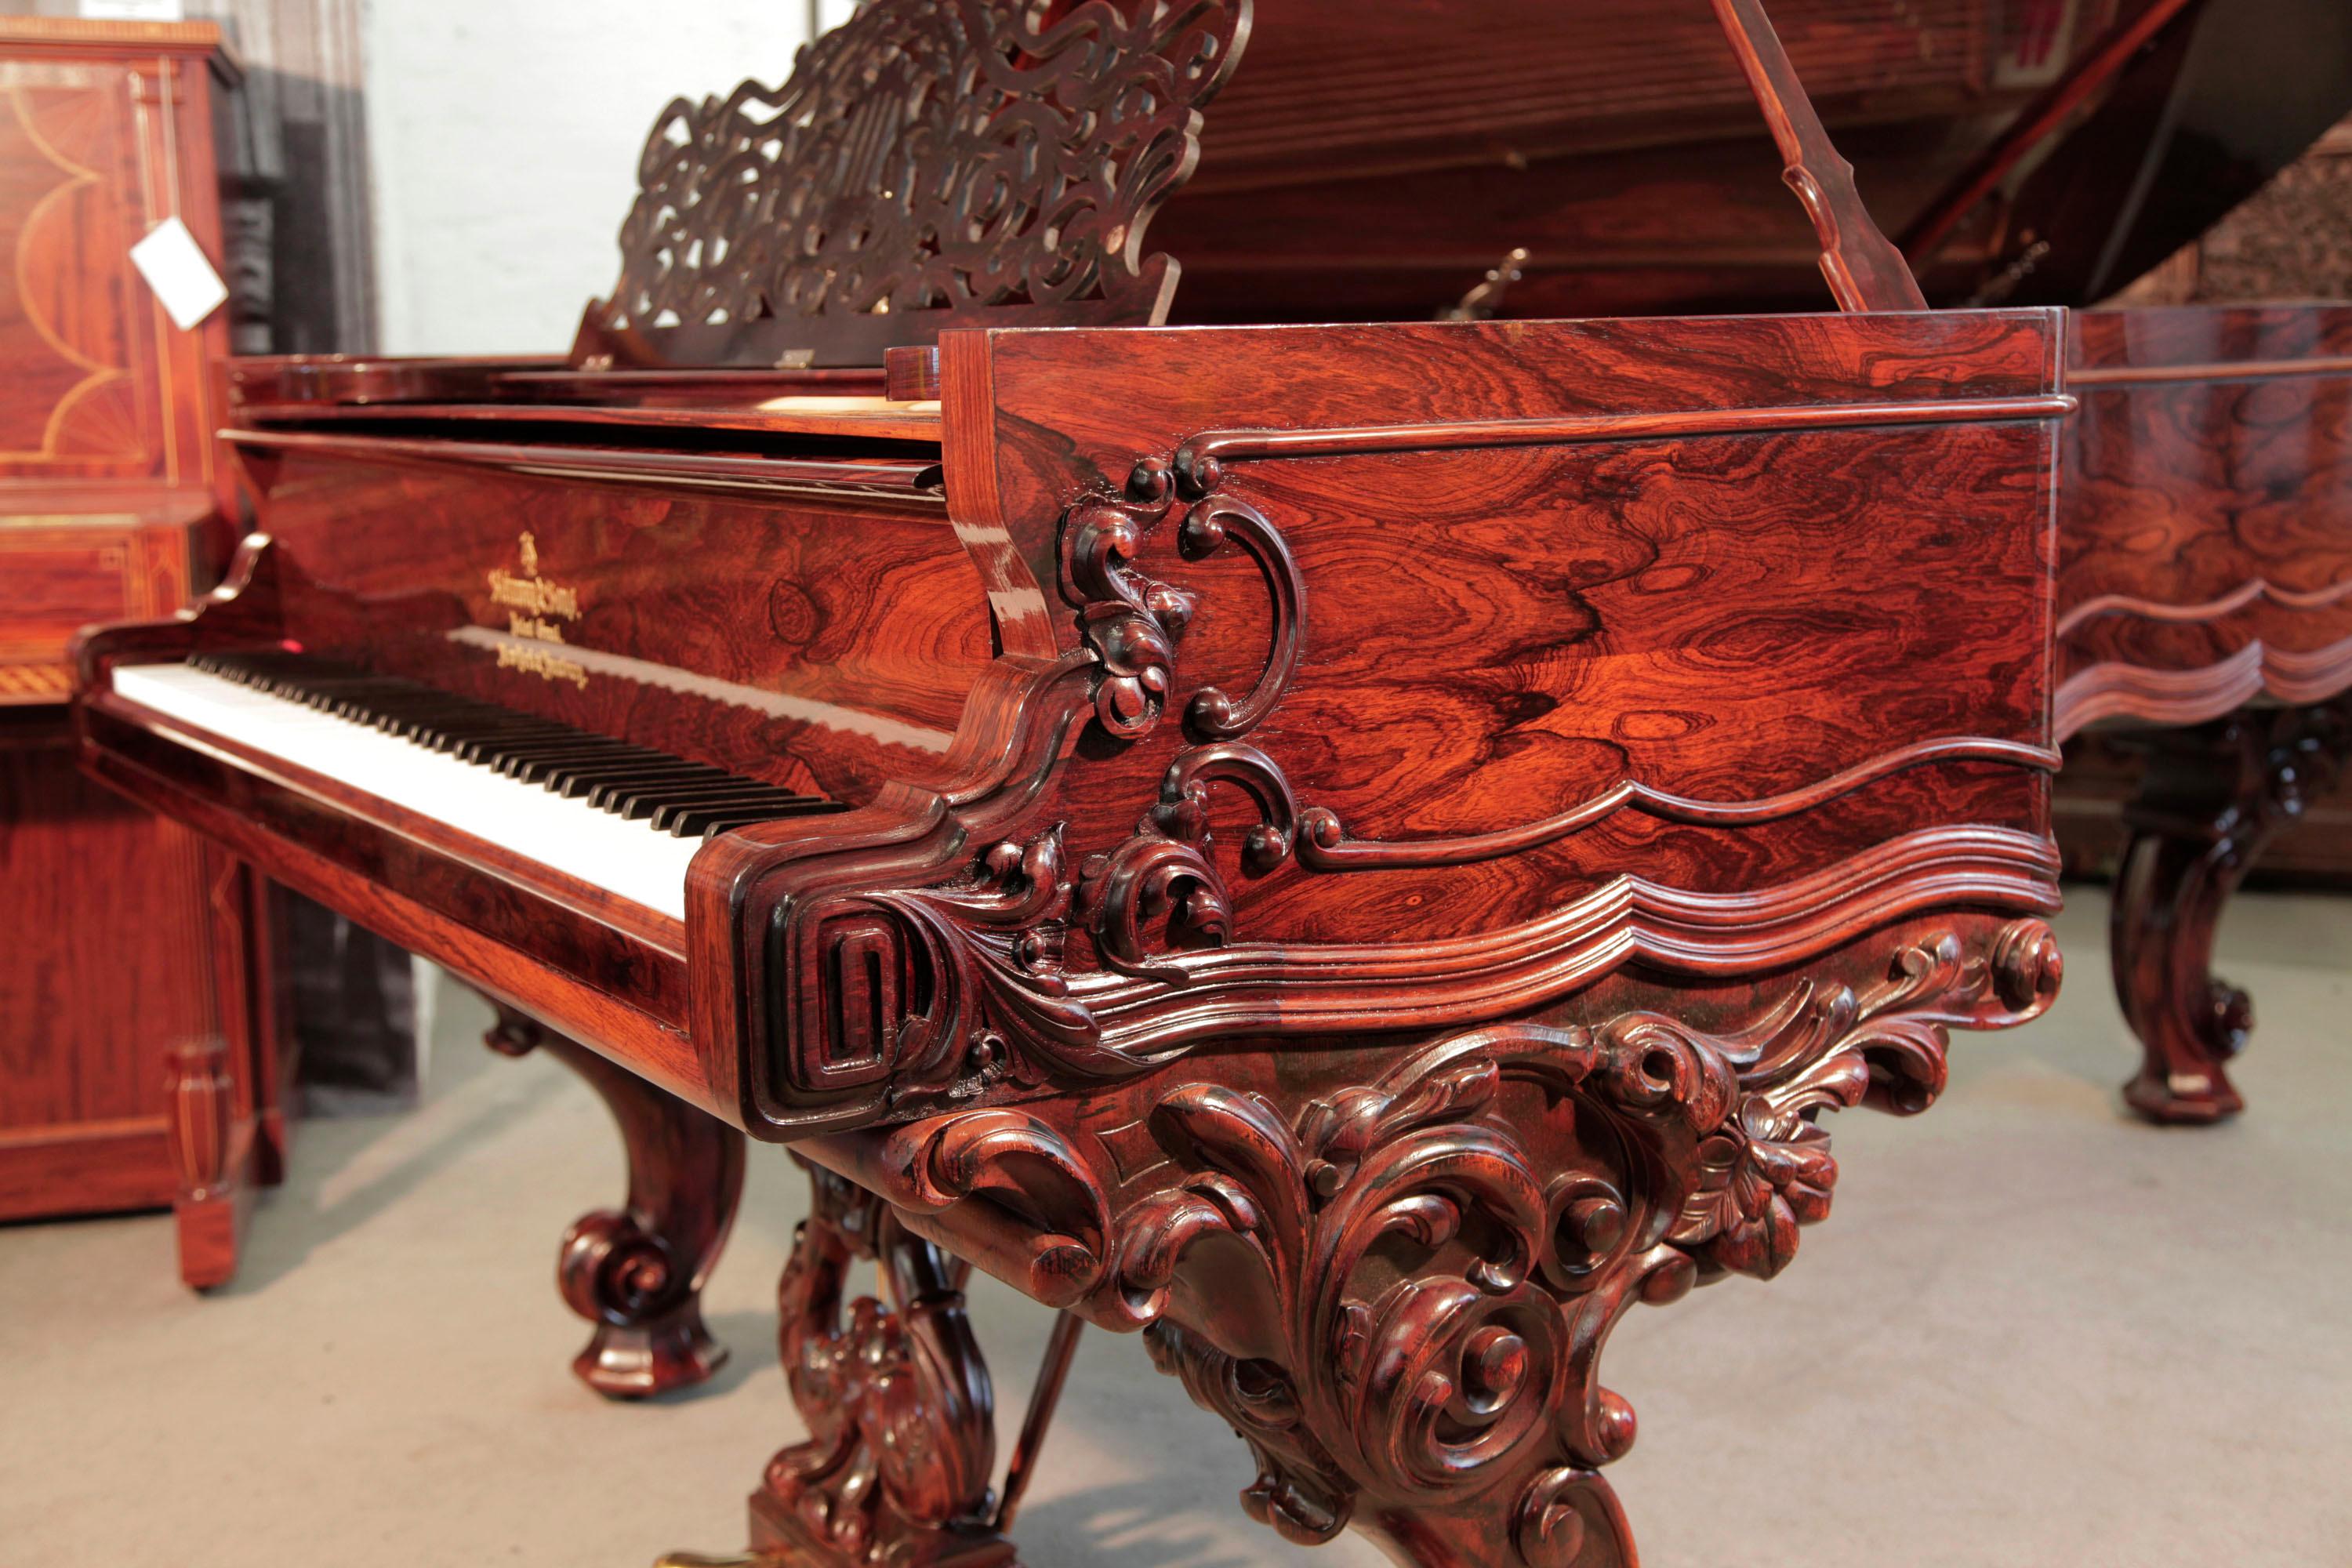 Piano à queue de concert Steinway & Sons Centennial de style rococo, 1874, avec caisse en palissandre, pupitre en filigrane et pieds à enroulement inversé ornementalement sculptés. Le piano est reconstruit.

La joue du piano est ornée d'un méandre